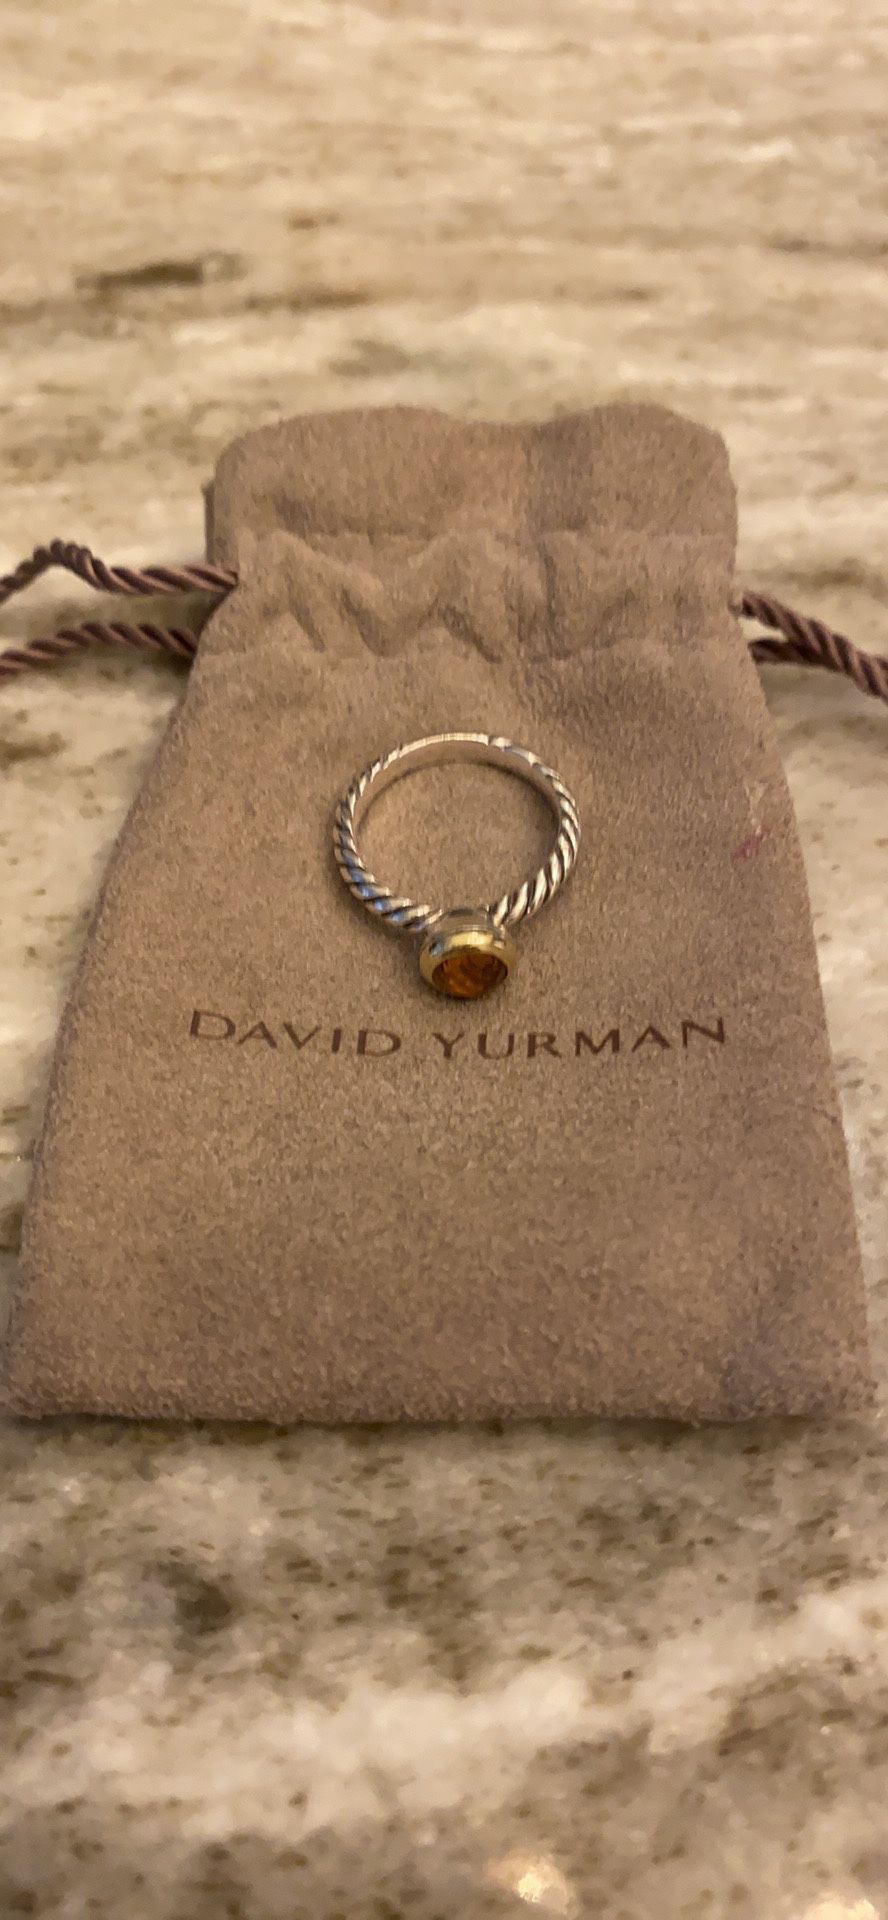 David yurman ring